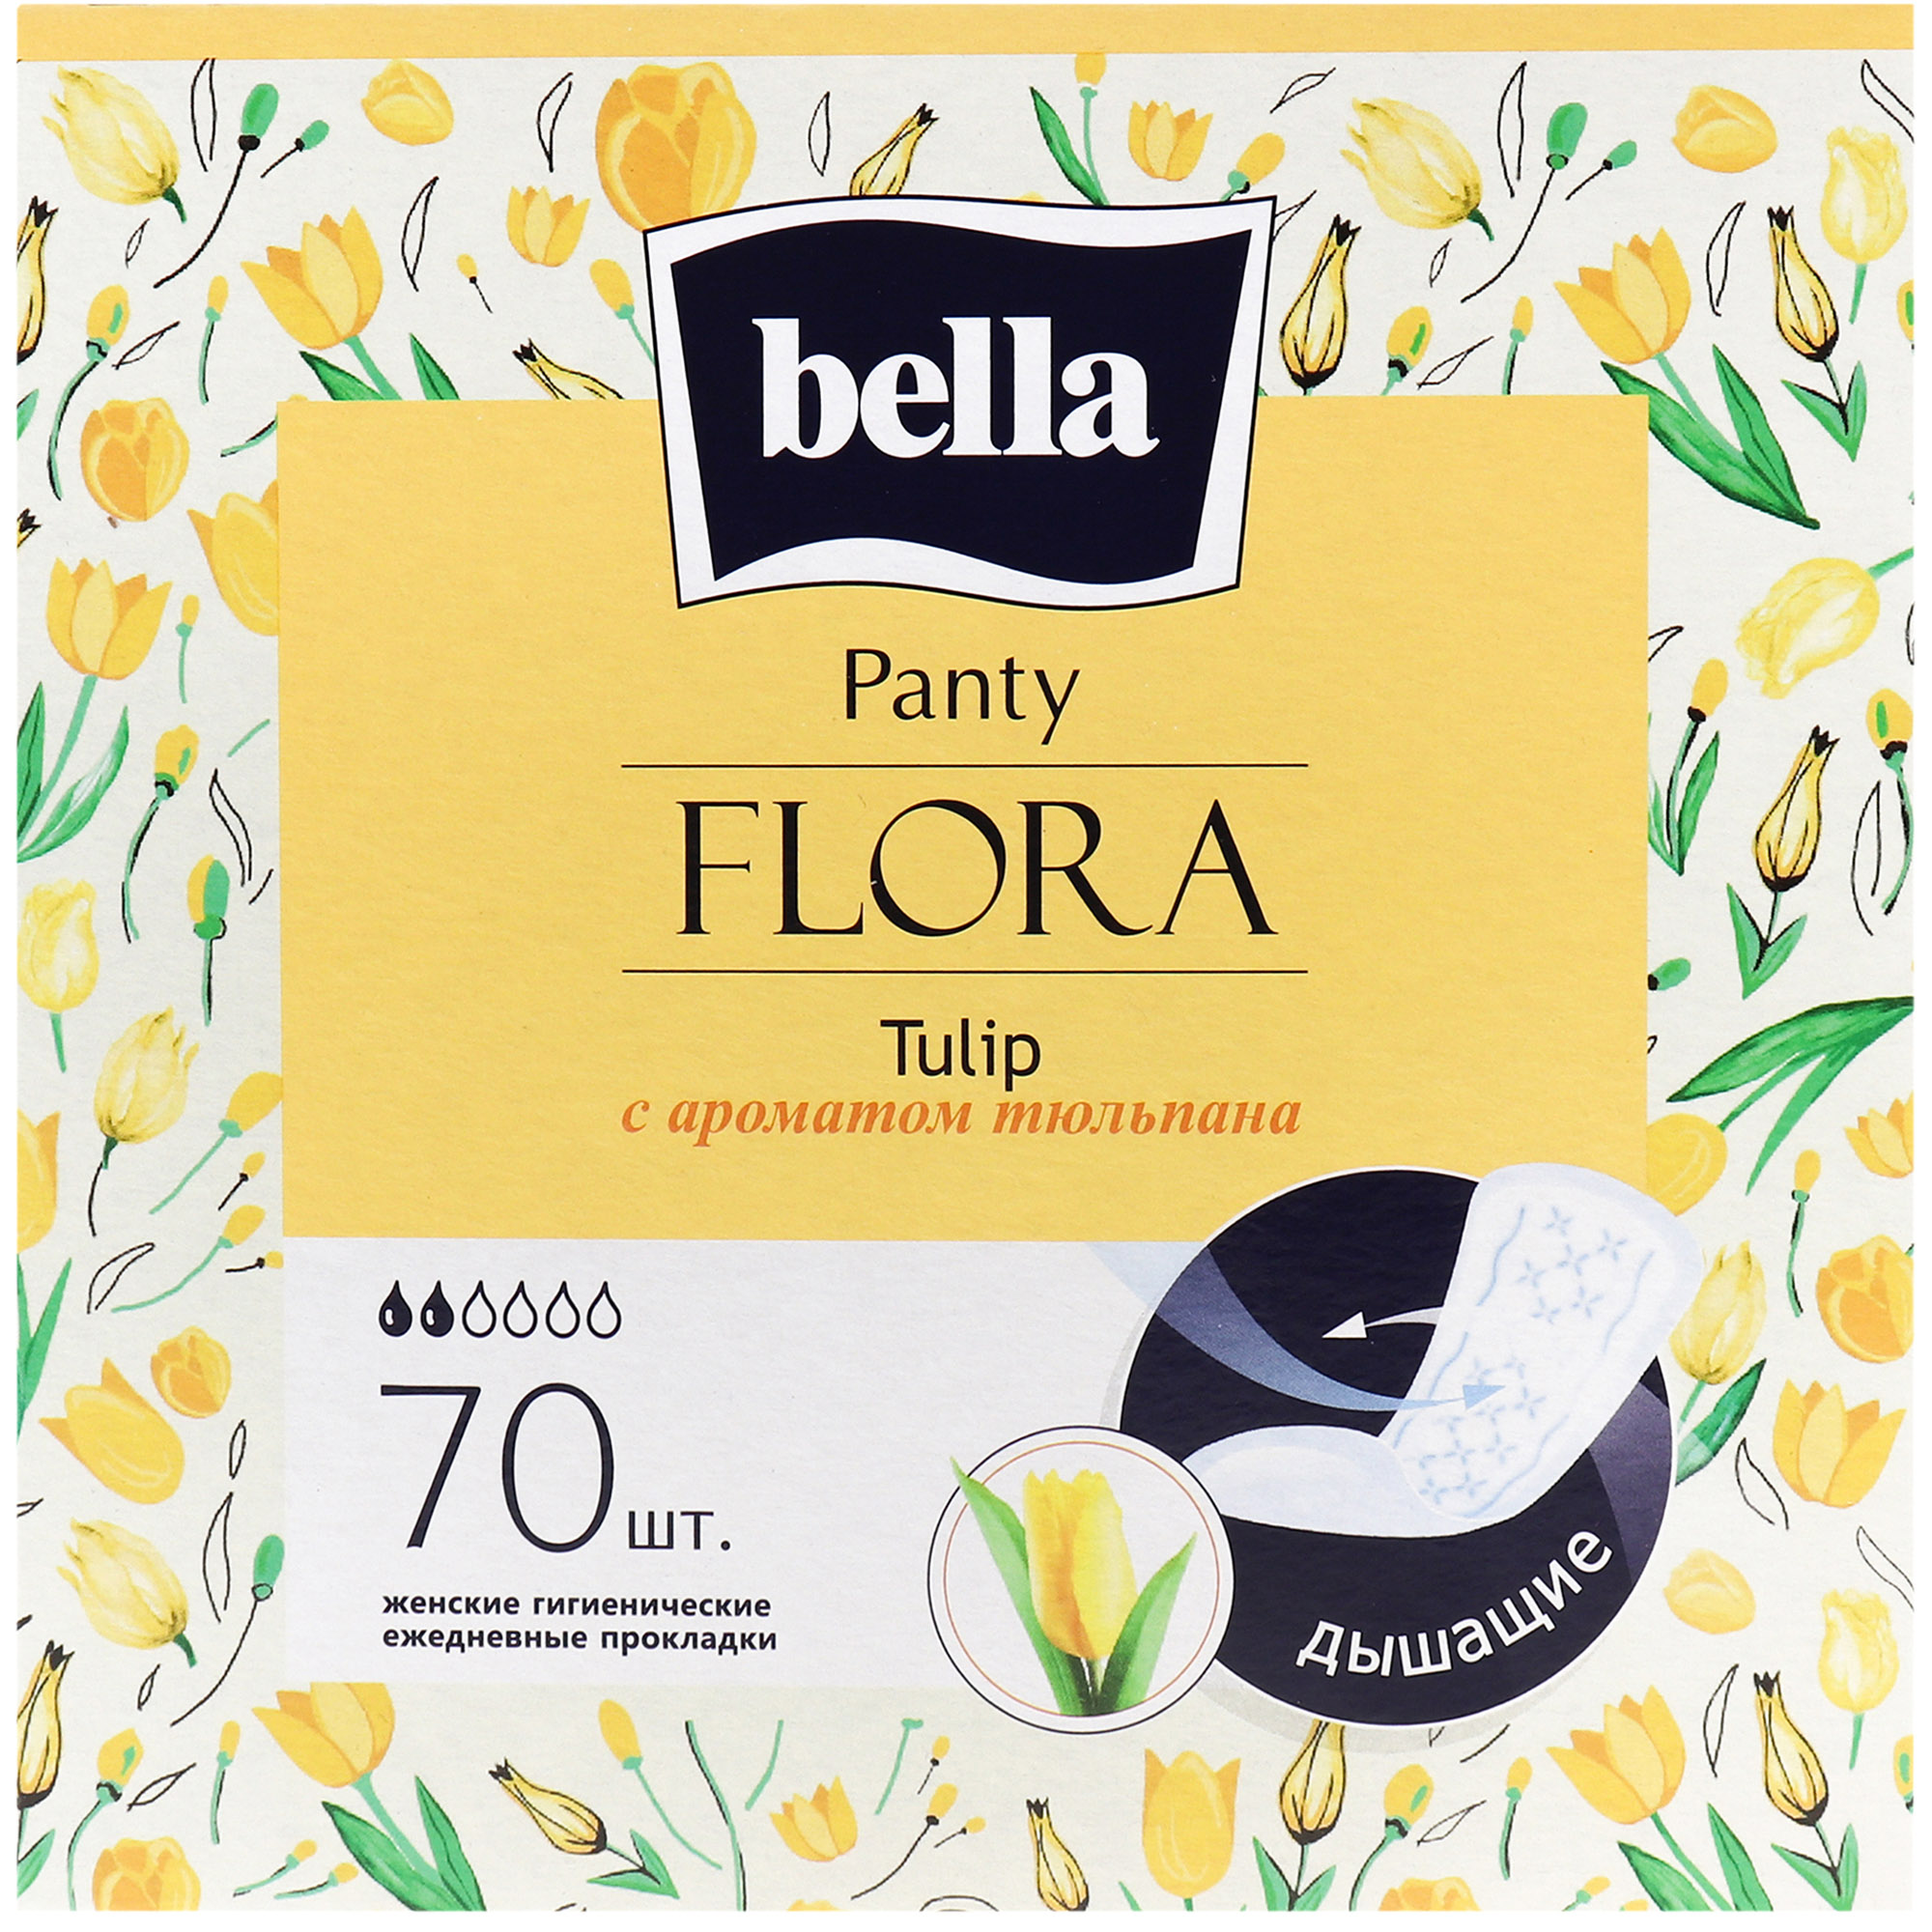 Ежедневные прокладки Bella Panty Flora Tulip 70 шт. - фото 1